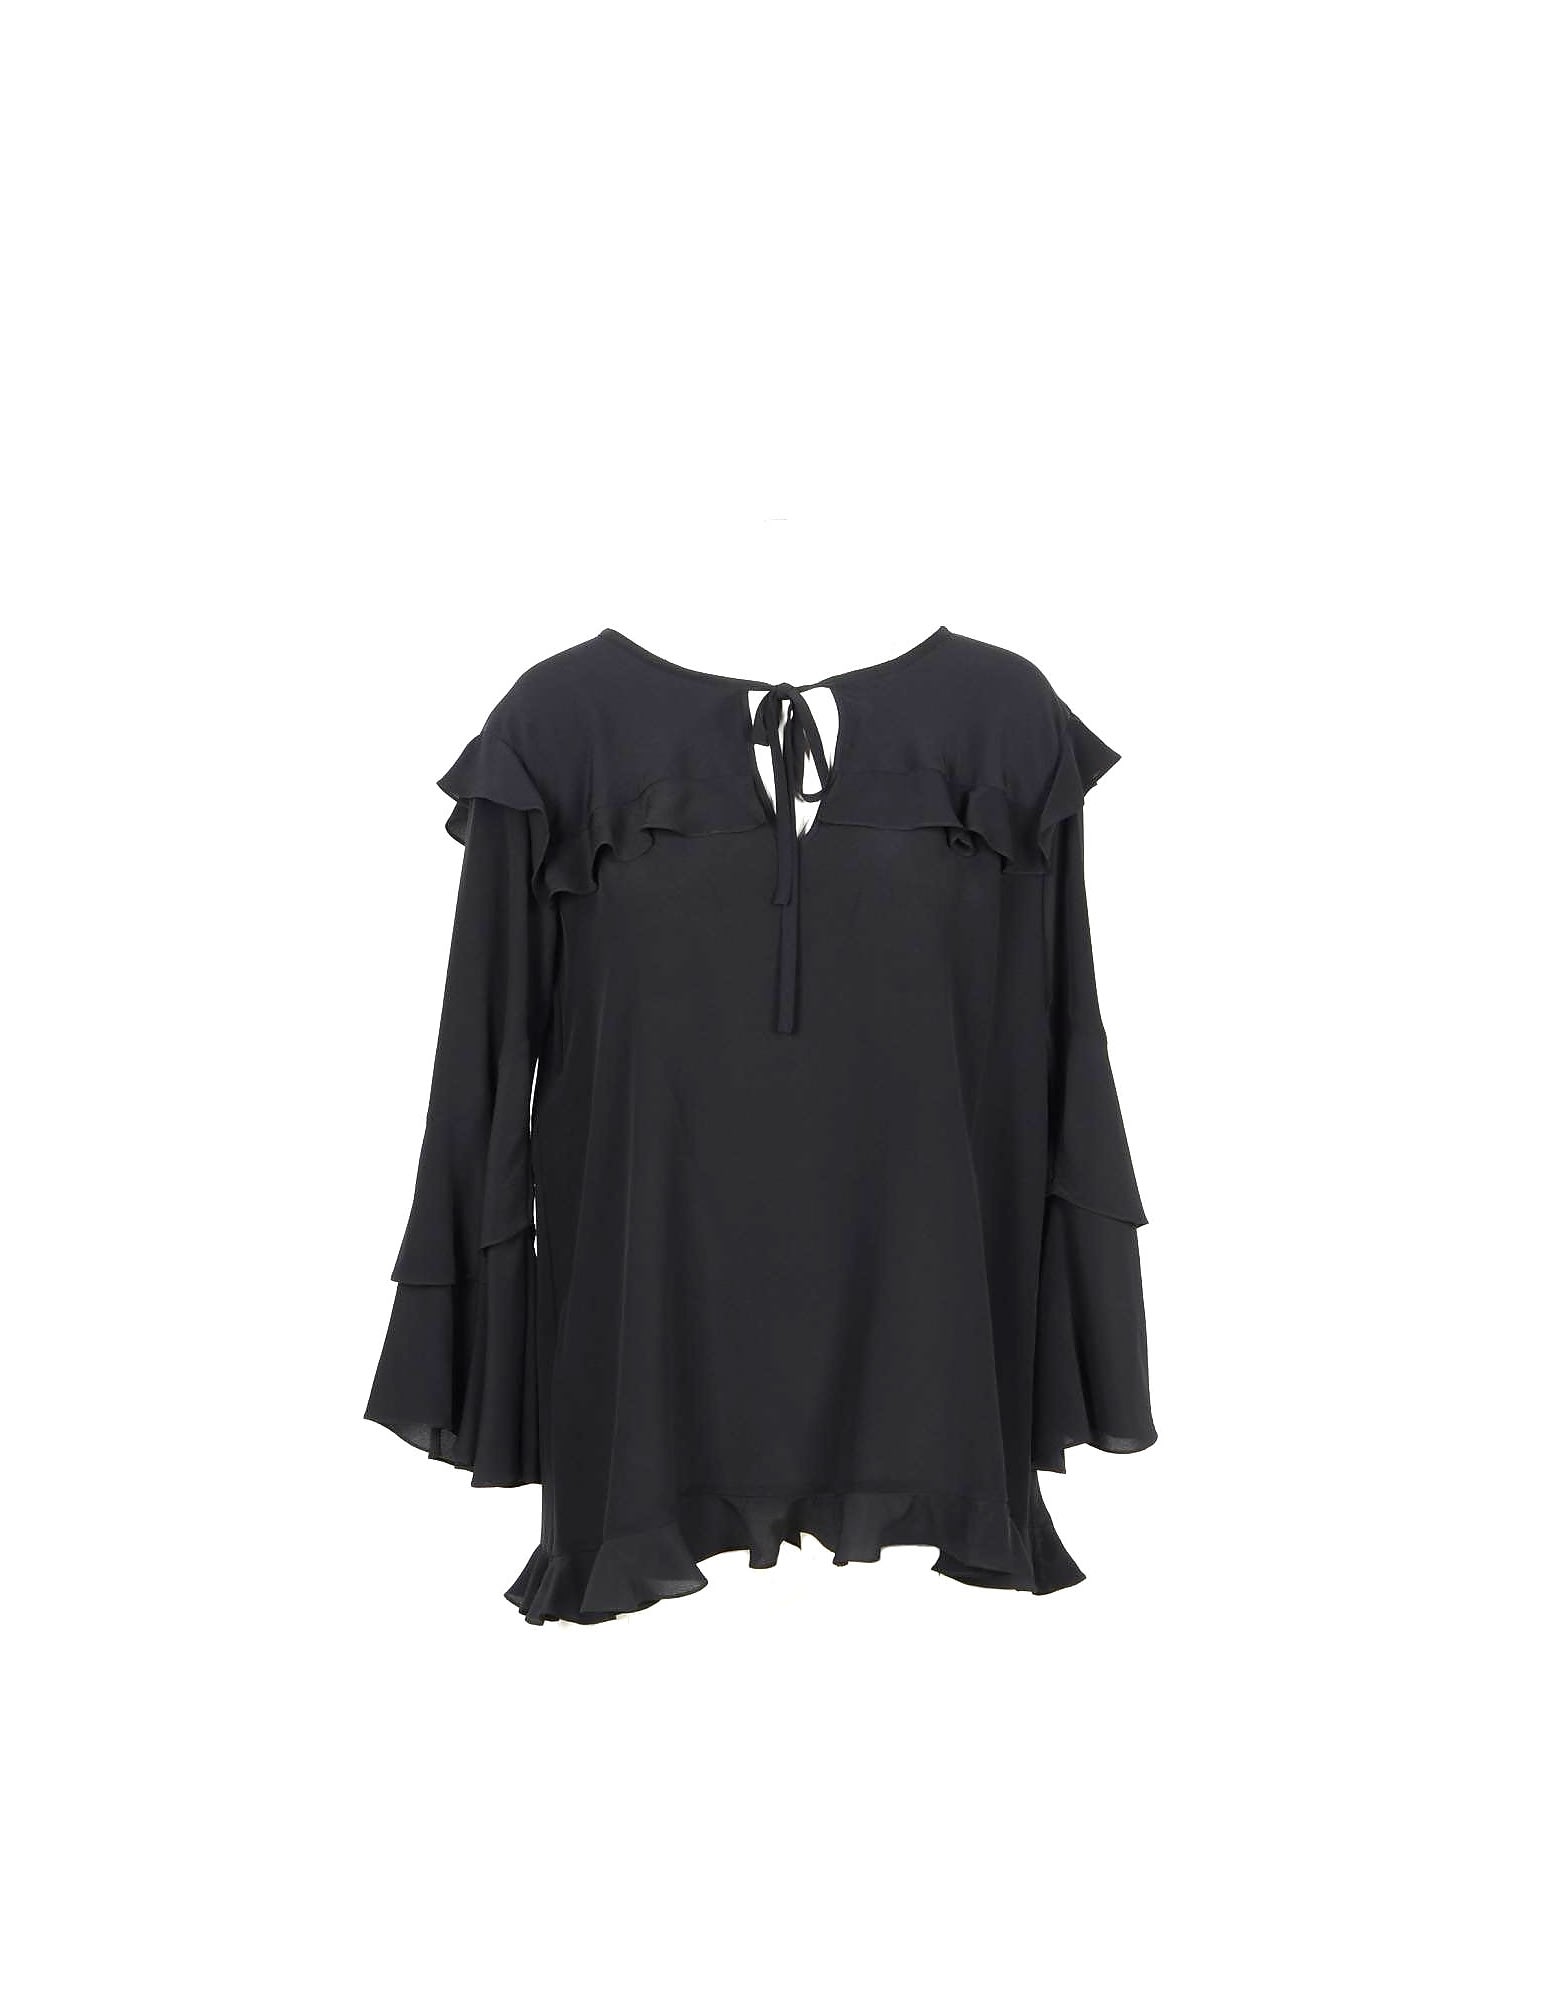 Moschino Womens Black Shirt